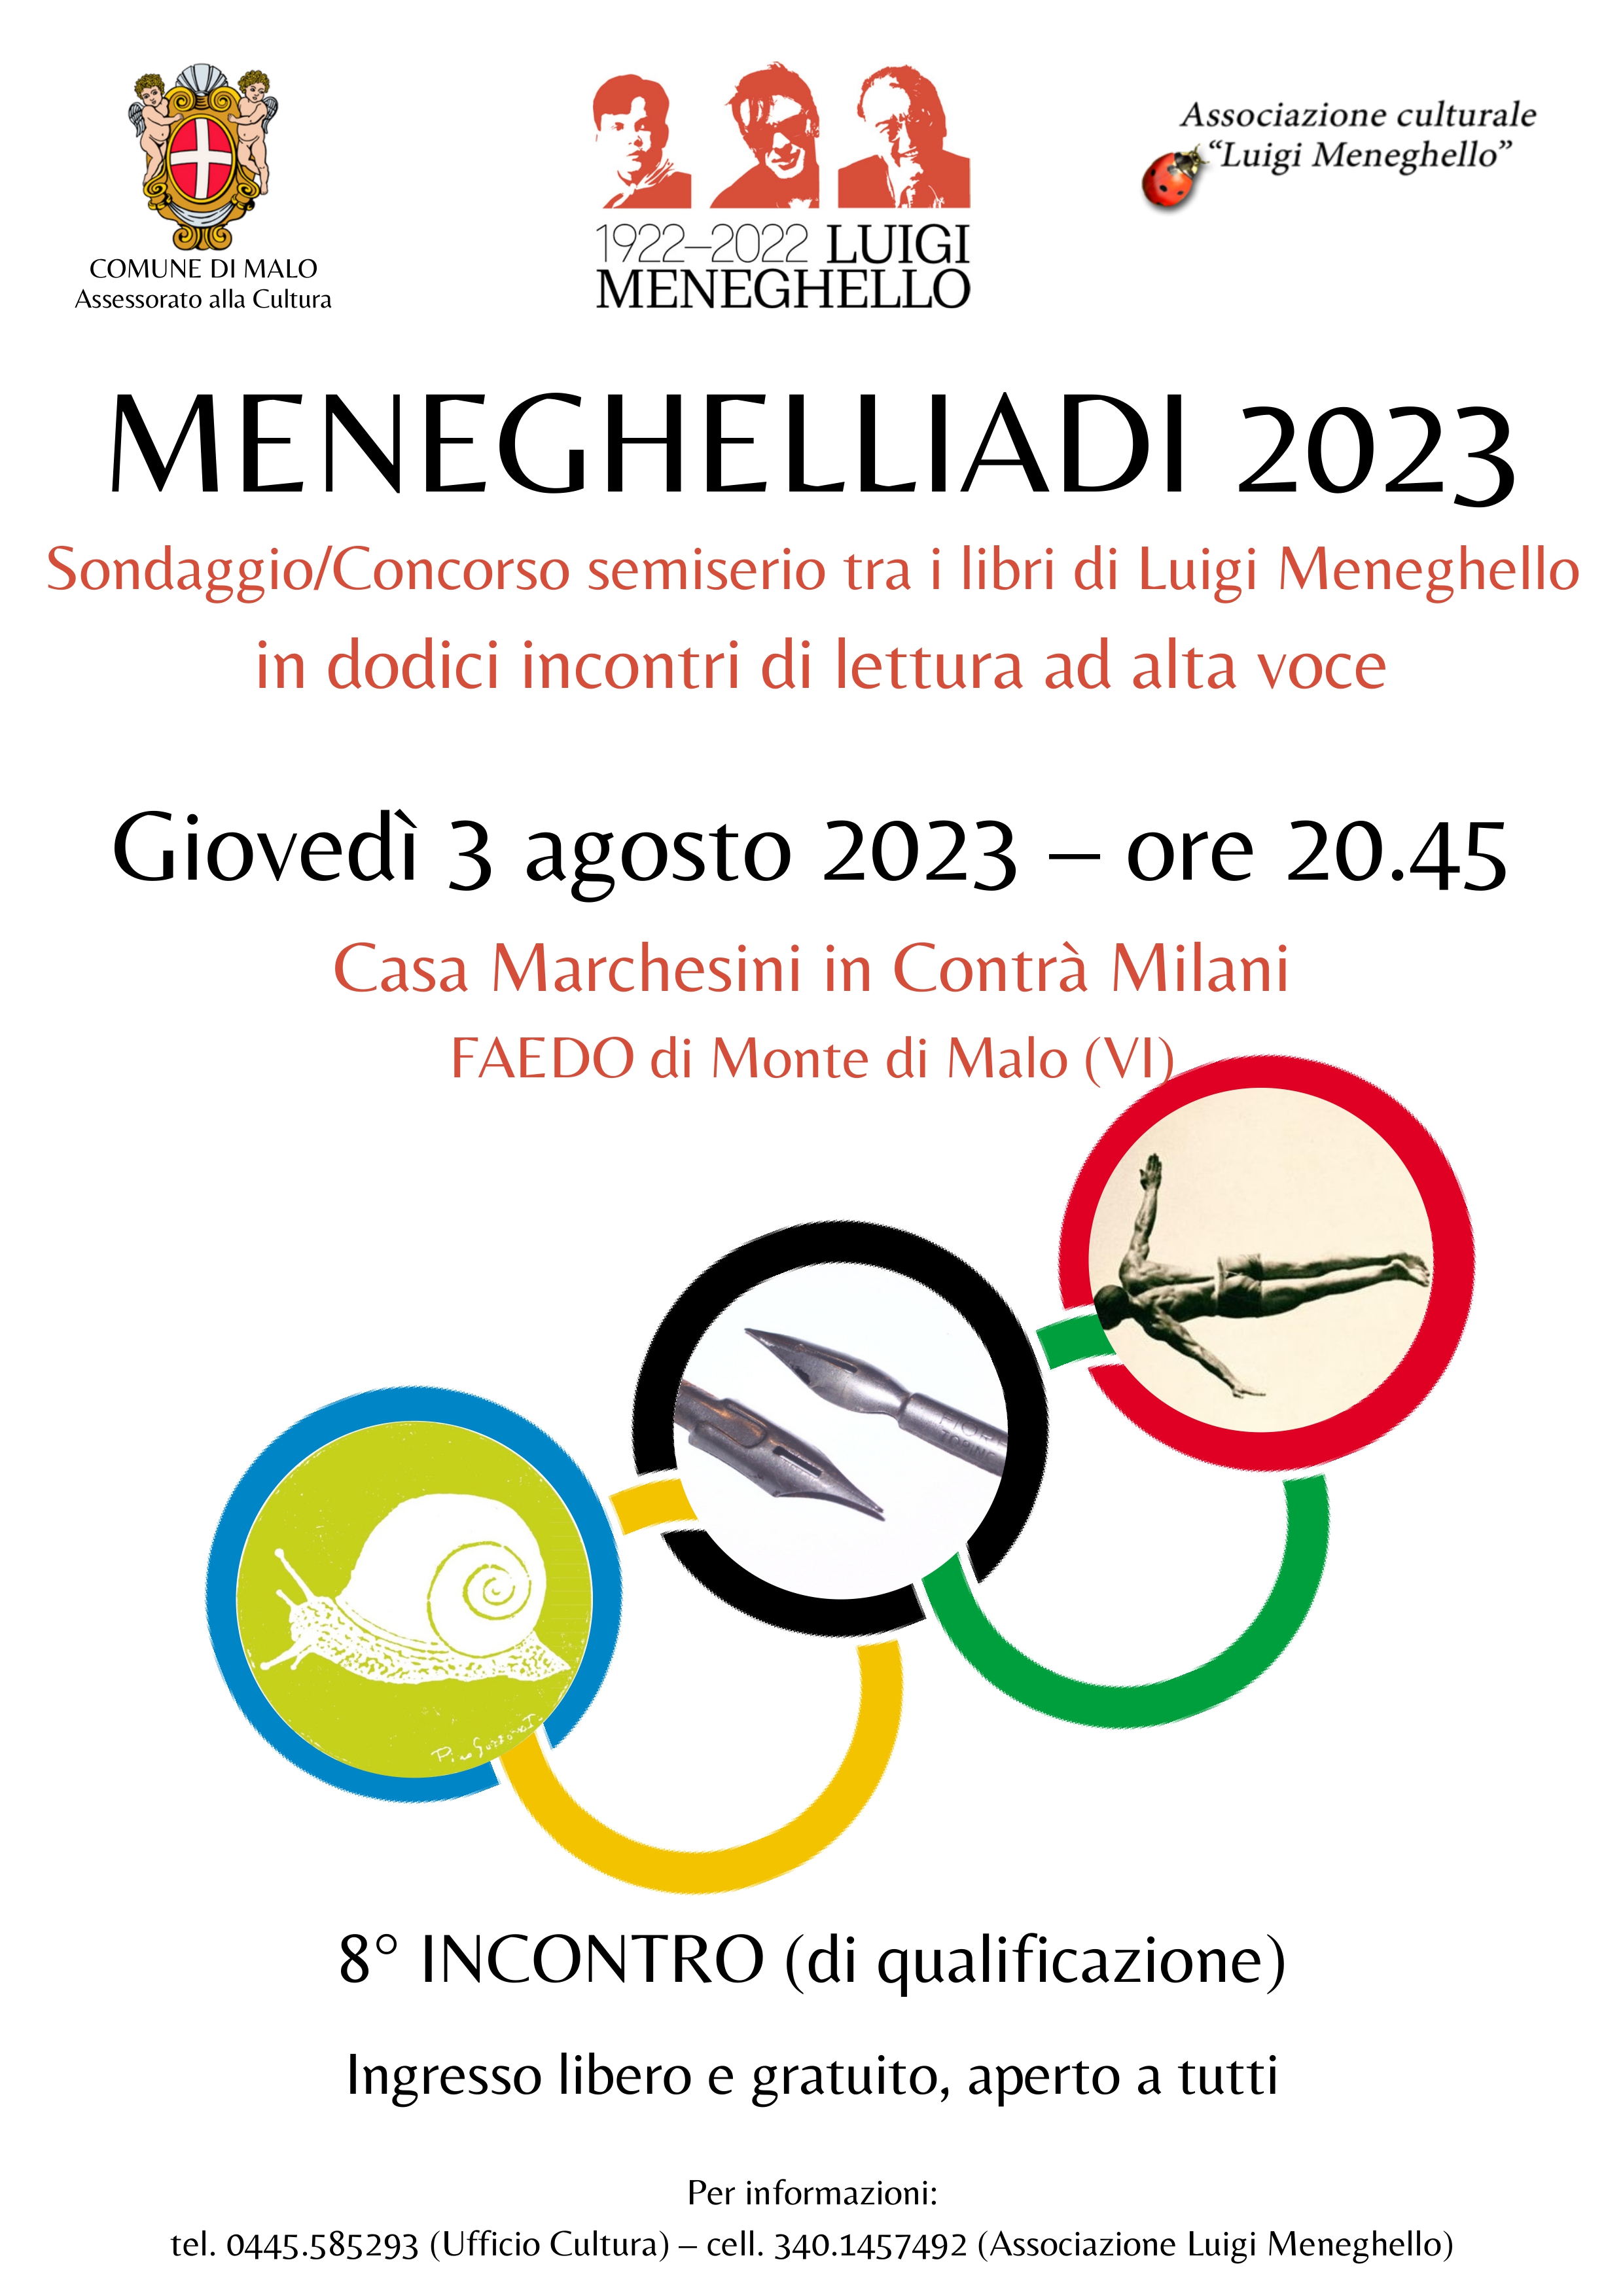 Meneghelliadi 2023. 8° incontro (di qualificazione)